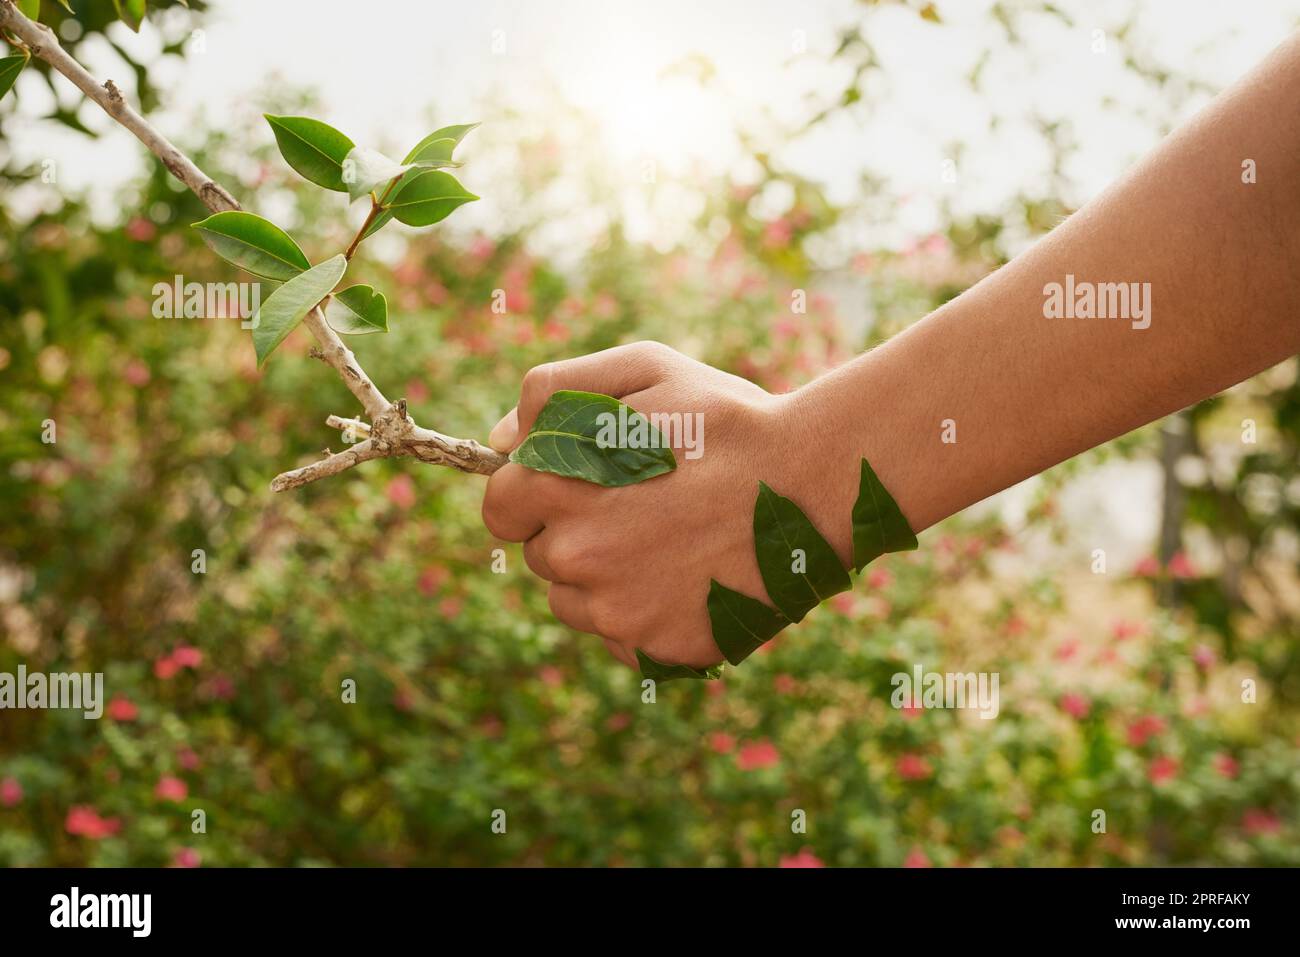 Partenaires pour un avenir plus vert. Un jeune homme non identifiable qui se secoue la main avec une branche dans son jardin. Banque D'Images